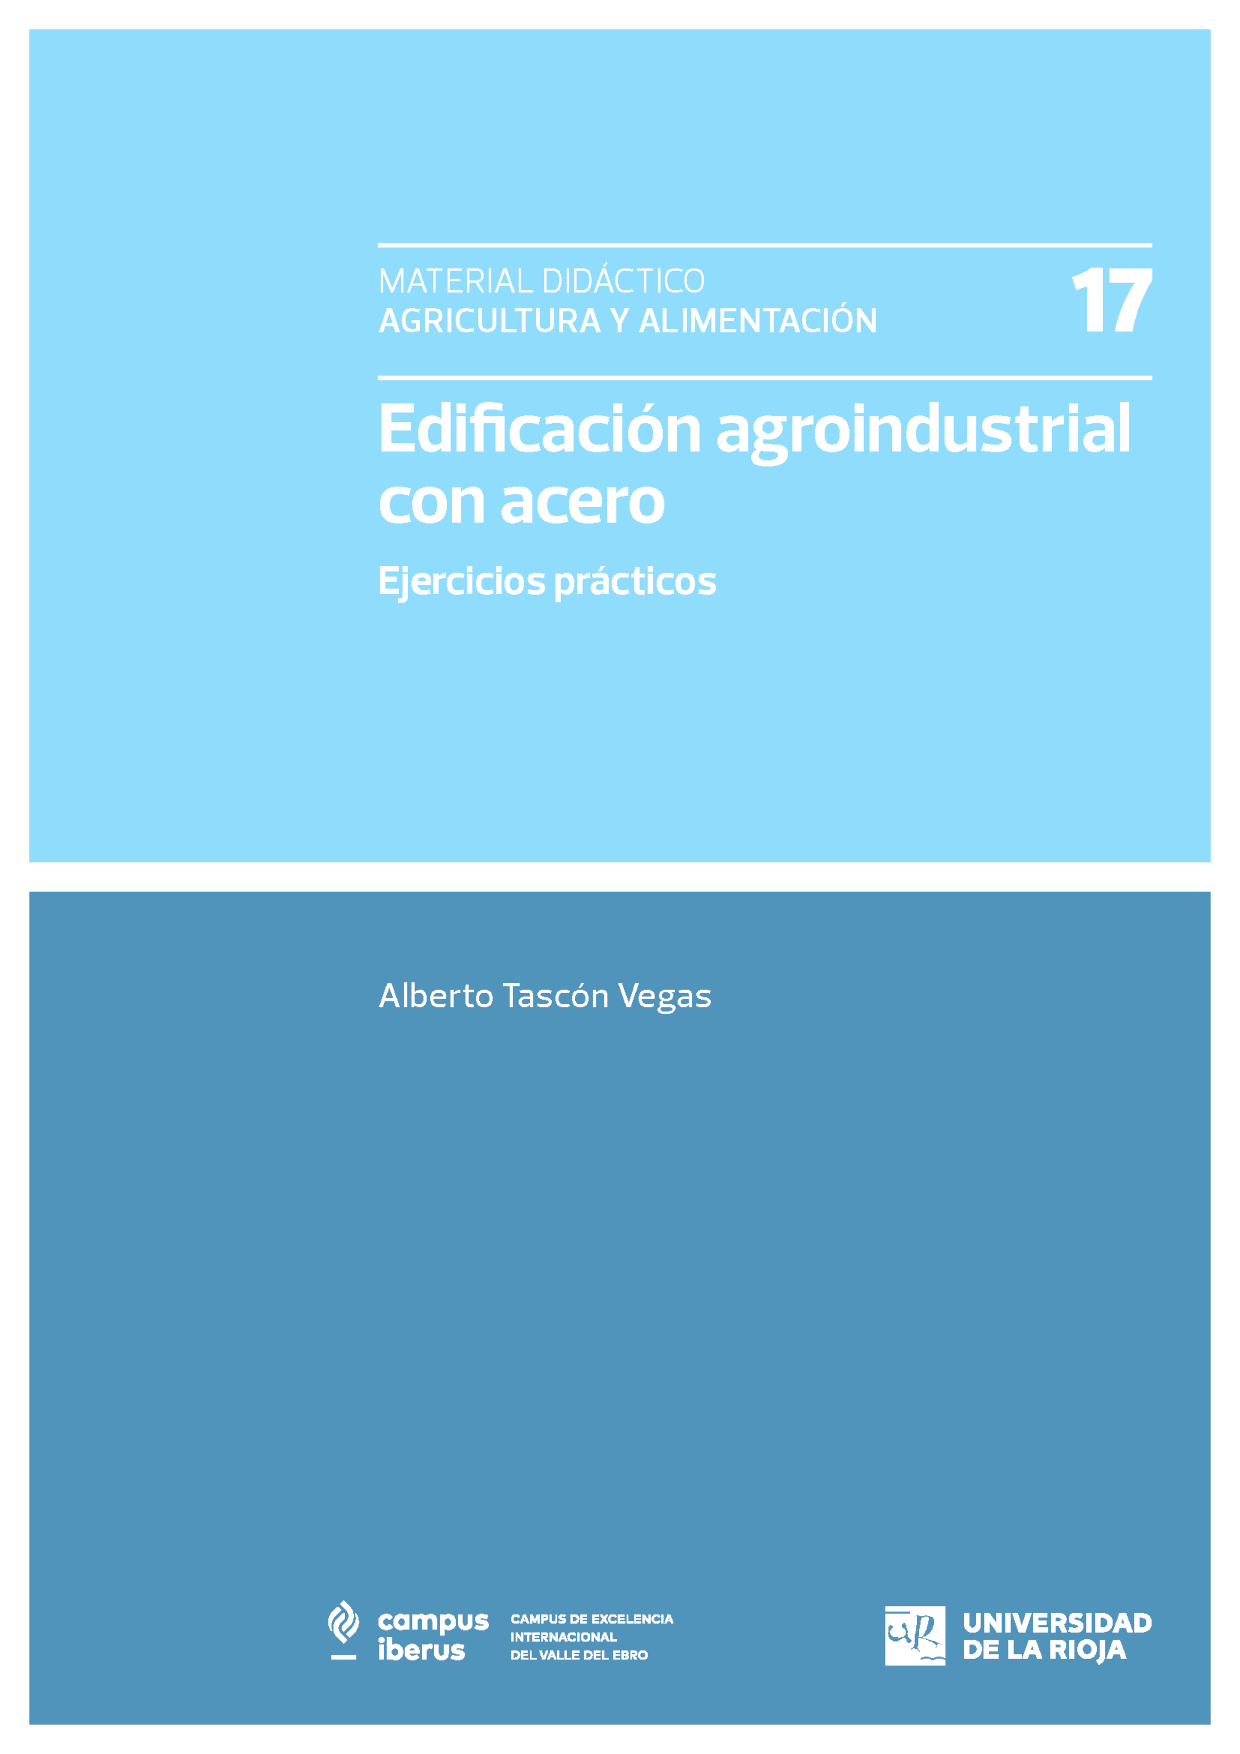 Imagen de portada del libro Edificación agroindustrial con acero